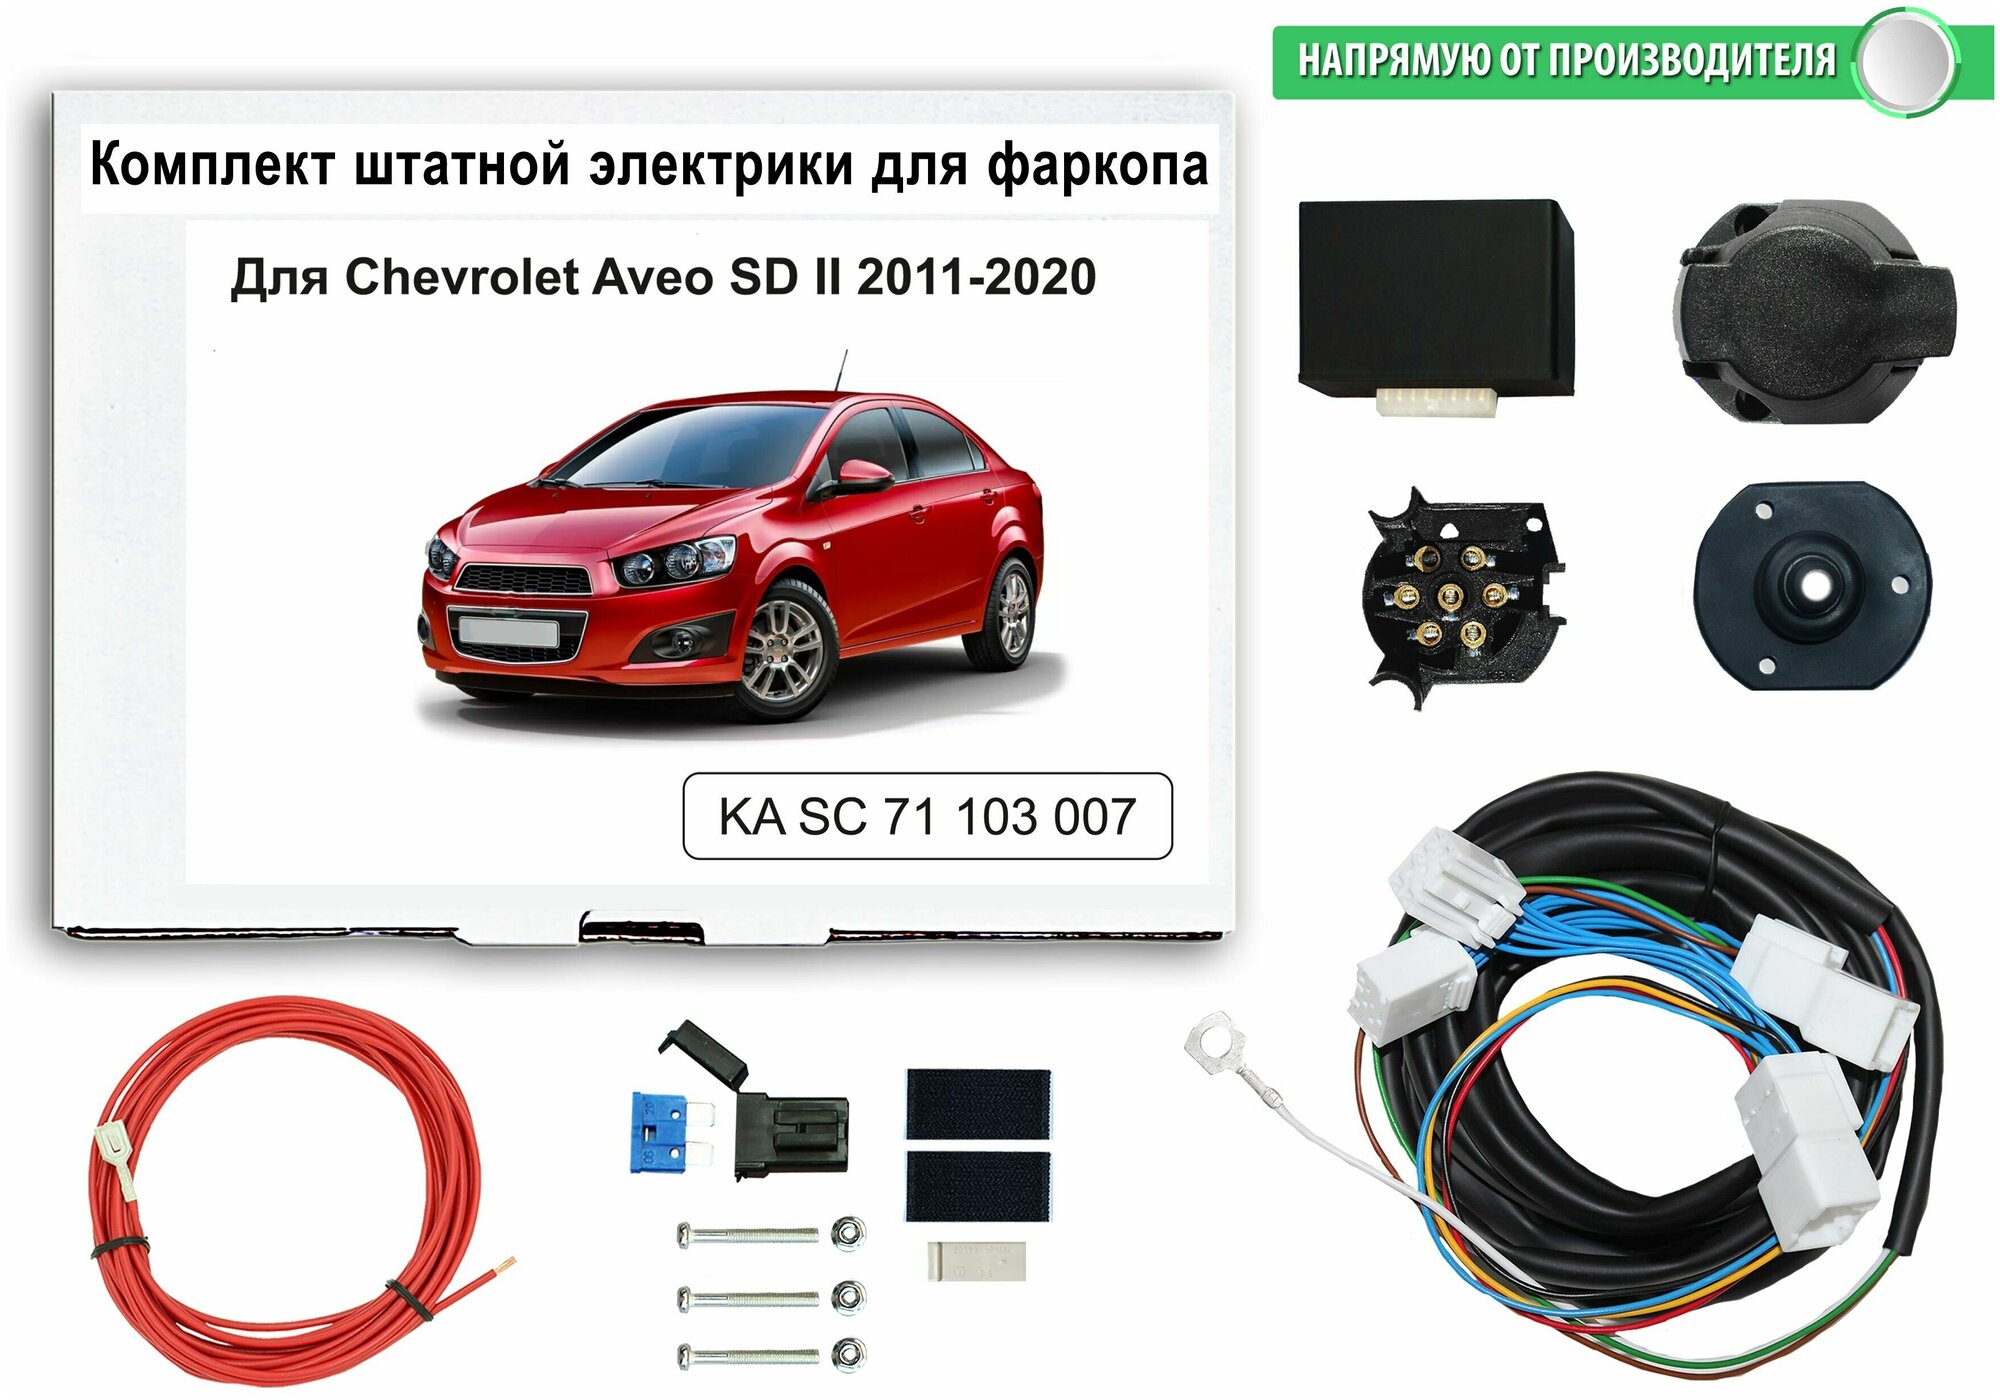 Блок согласования ( смарт-коннект) для фаркопа Chevrolet Aveo II SD 2011-2020 со штатными колодками